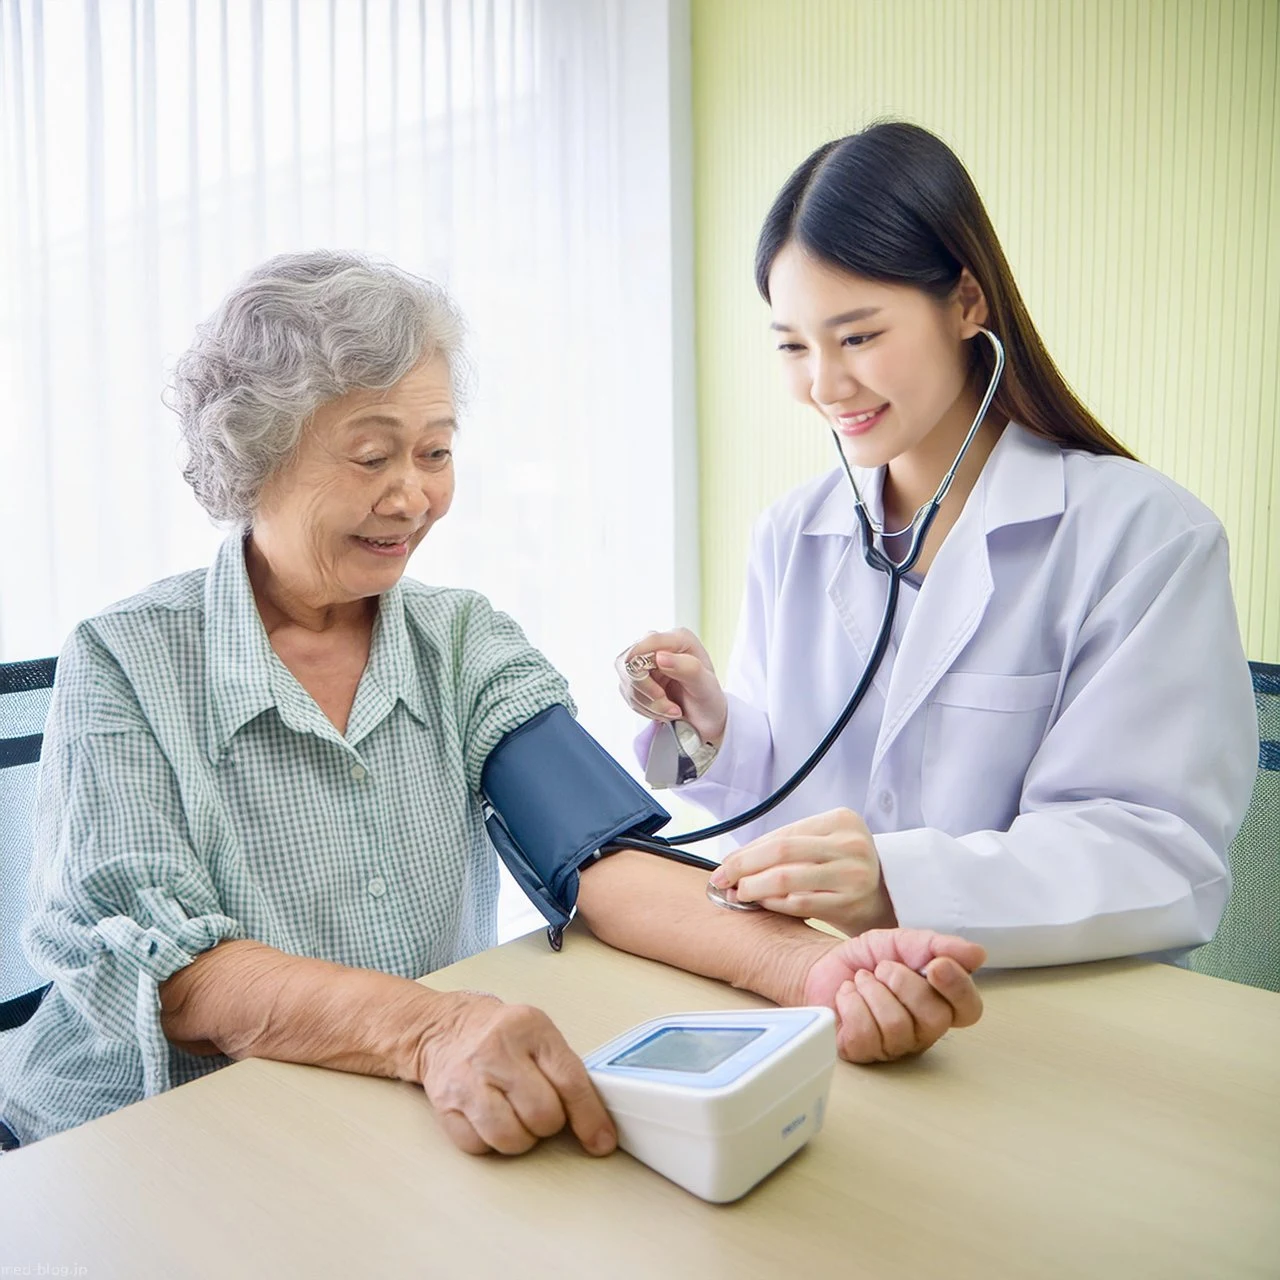 小さな診療所の明るい診察室で、小綺麗な身なりをした日本人の老年女性が、若い日本人女性の医師の前で笑顔で電子自動血圧計で血圧を測定している写真.jpg (1280×1280)